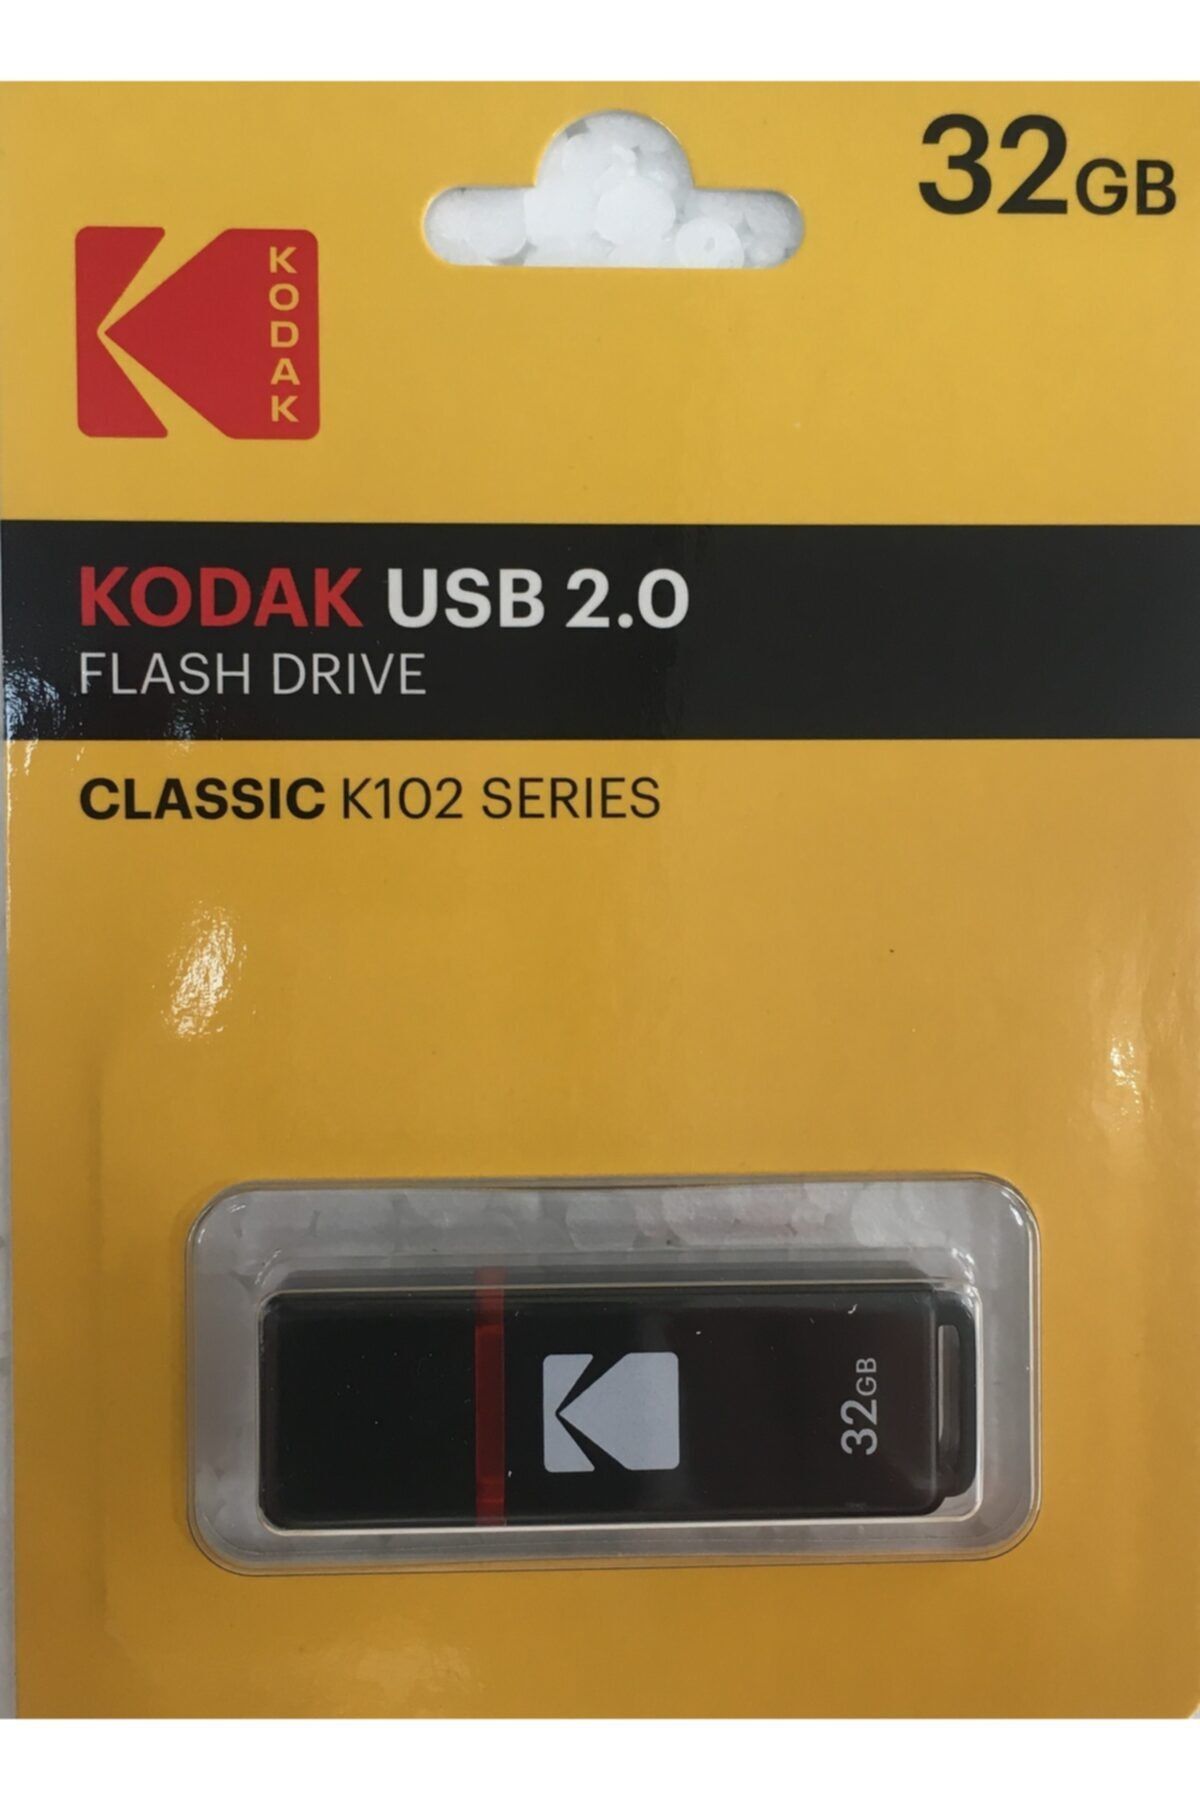 Kodak Usb 2.0 K 100 32gb Usb Bellek - Aynı Gün Beklemeden Bedava Kargo